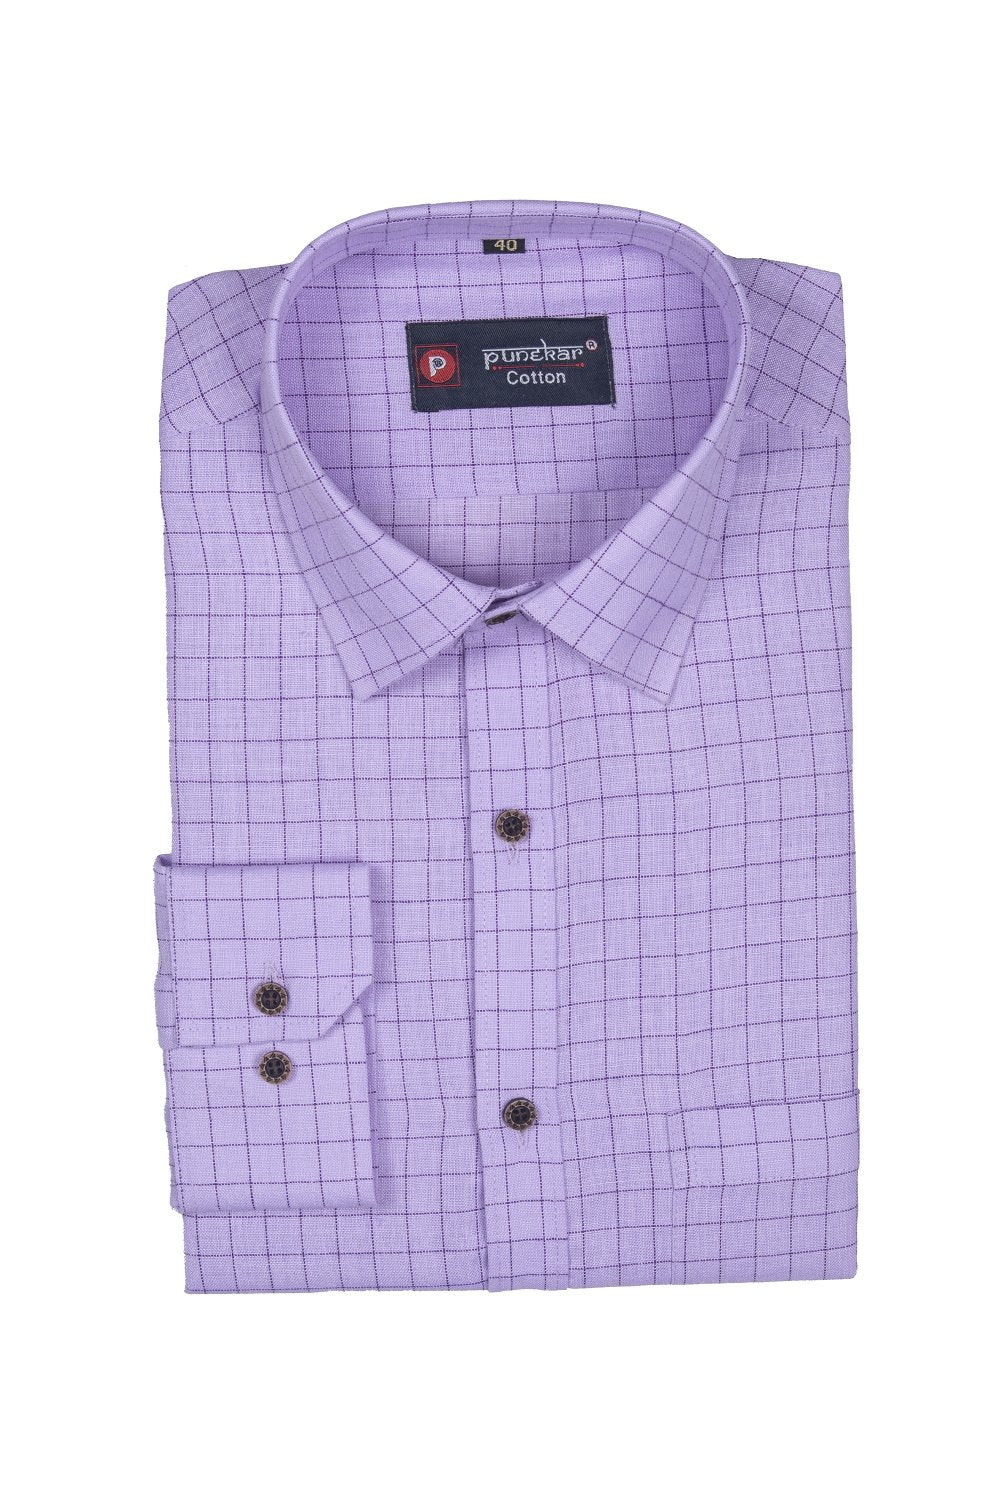 Punekar Cotton Purple Color Check Criss Cross Woven Cotton Shirt for Men&